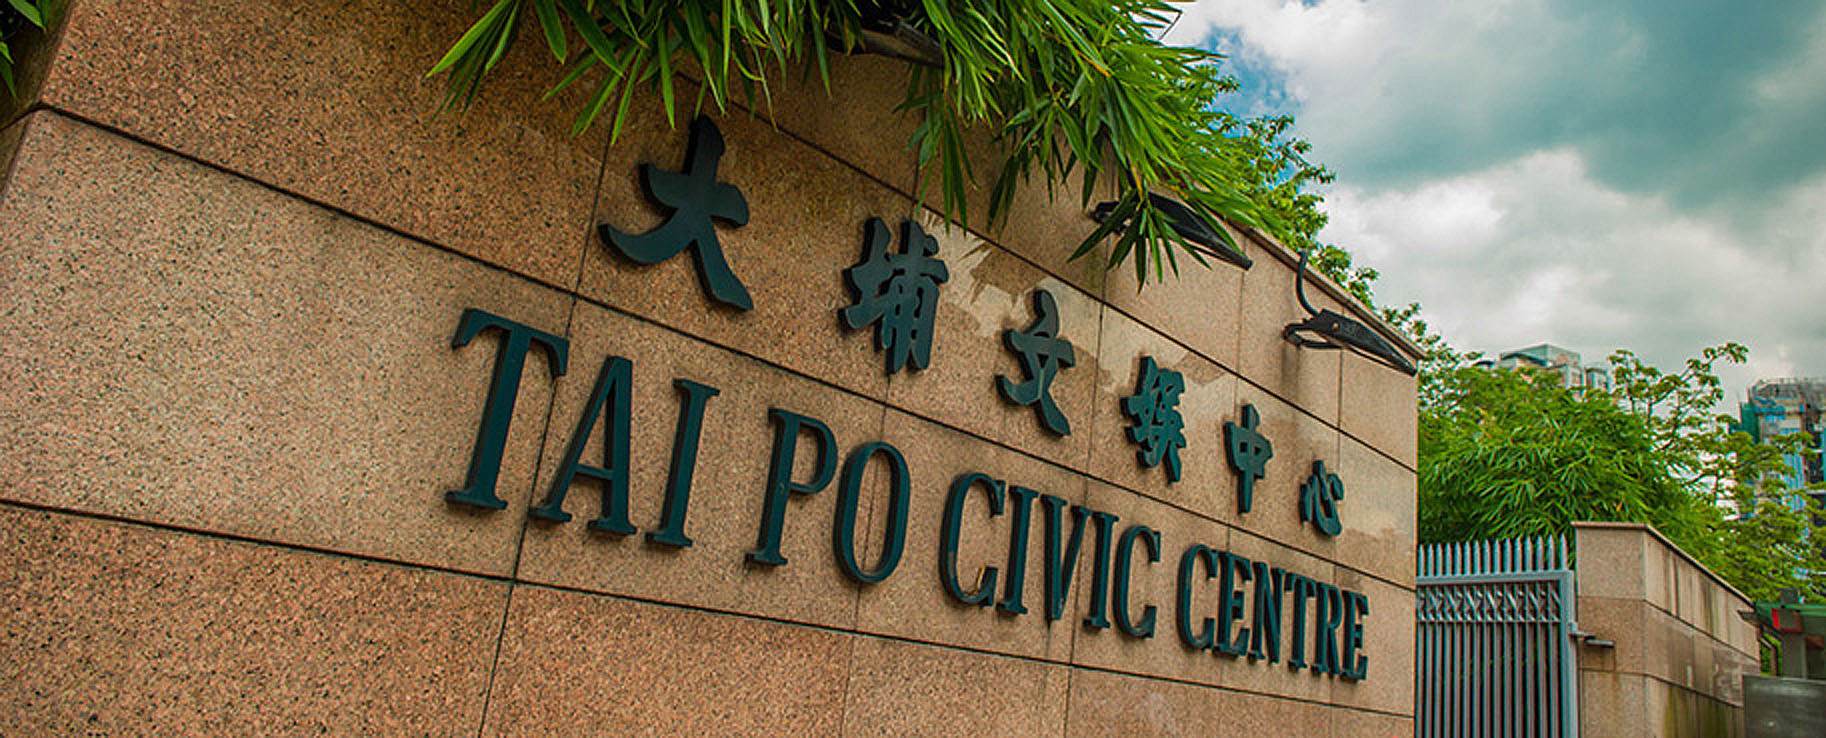 Photo 1: Tai Po Civic Centre